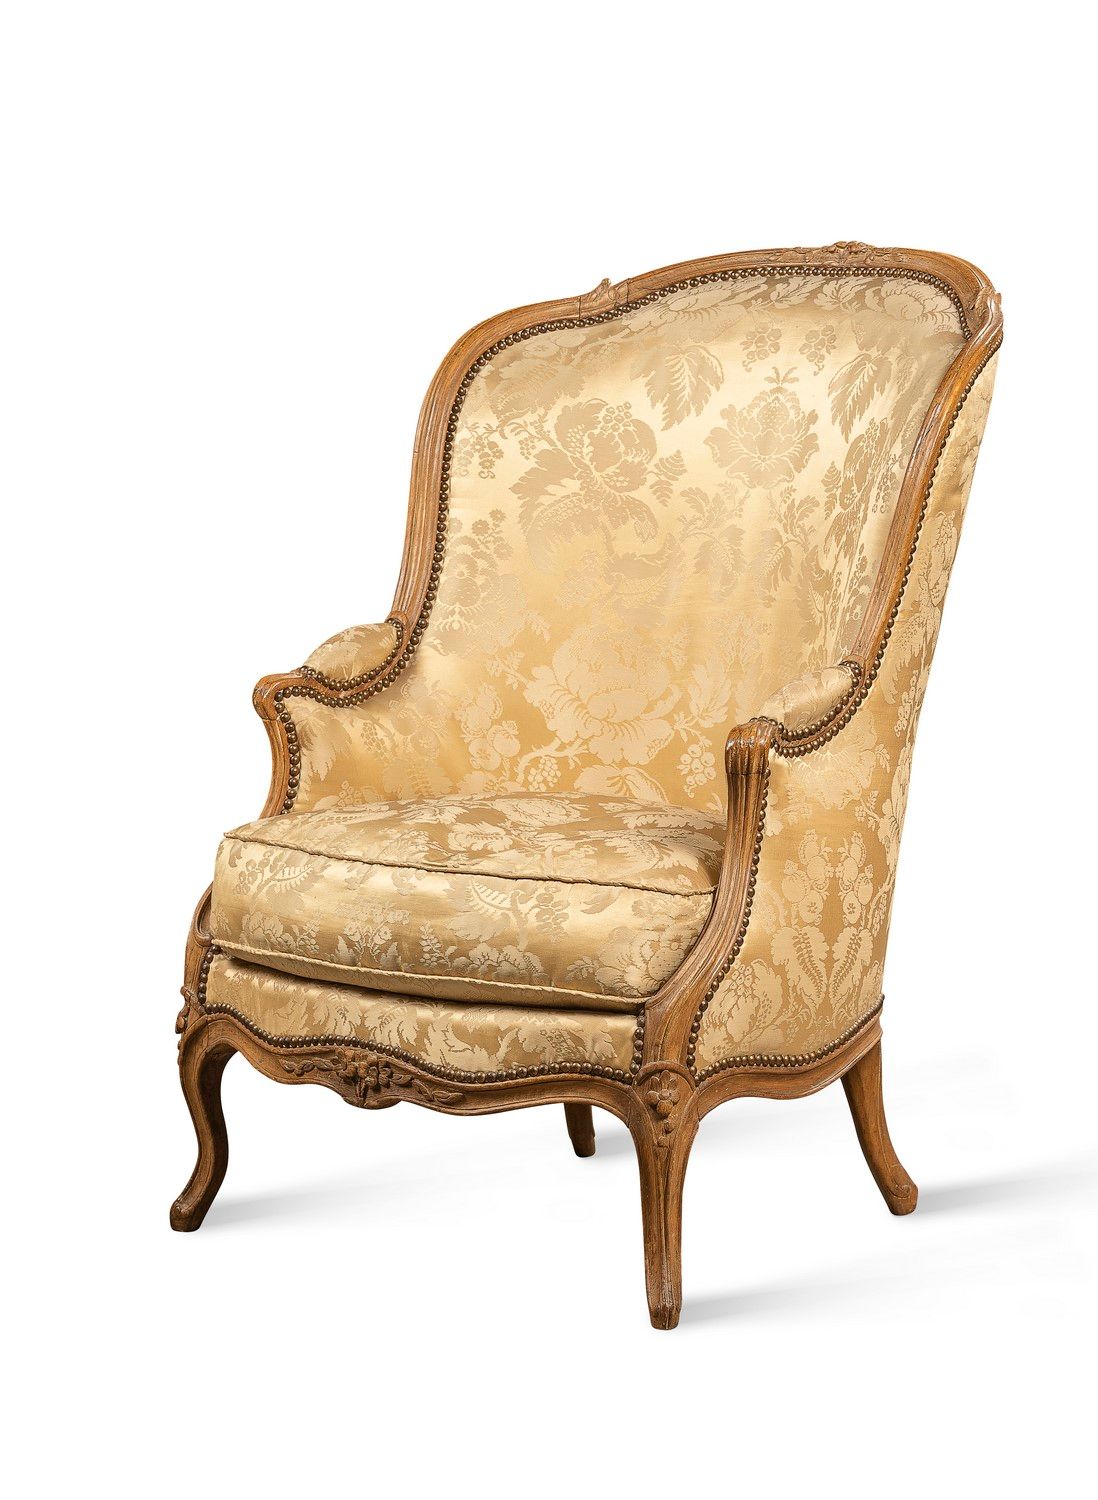 Null 贡多拉风格的扶手椅，天然木质，模制和雕刻有花朵。靠背是提琴形的，扶手是圆筒形的，腿是弯曲的。

印有......CART.的字样。

路易十五时期。
&hellip;